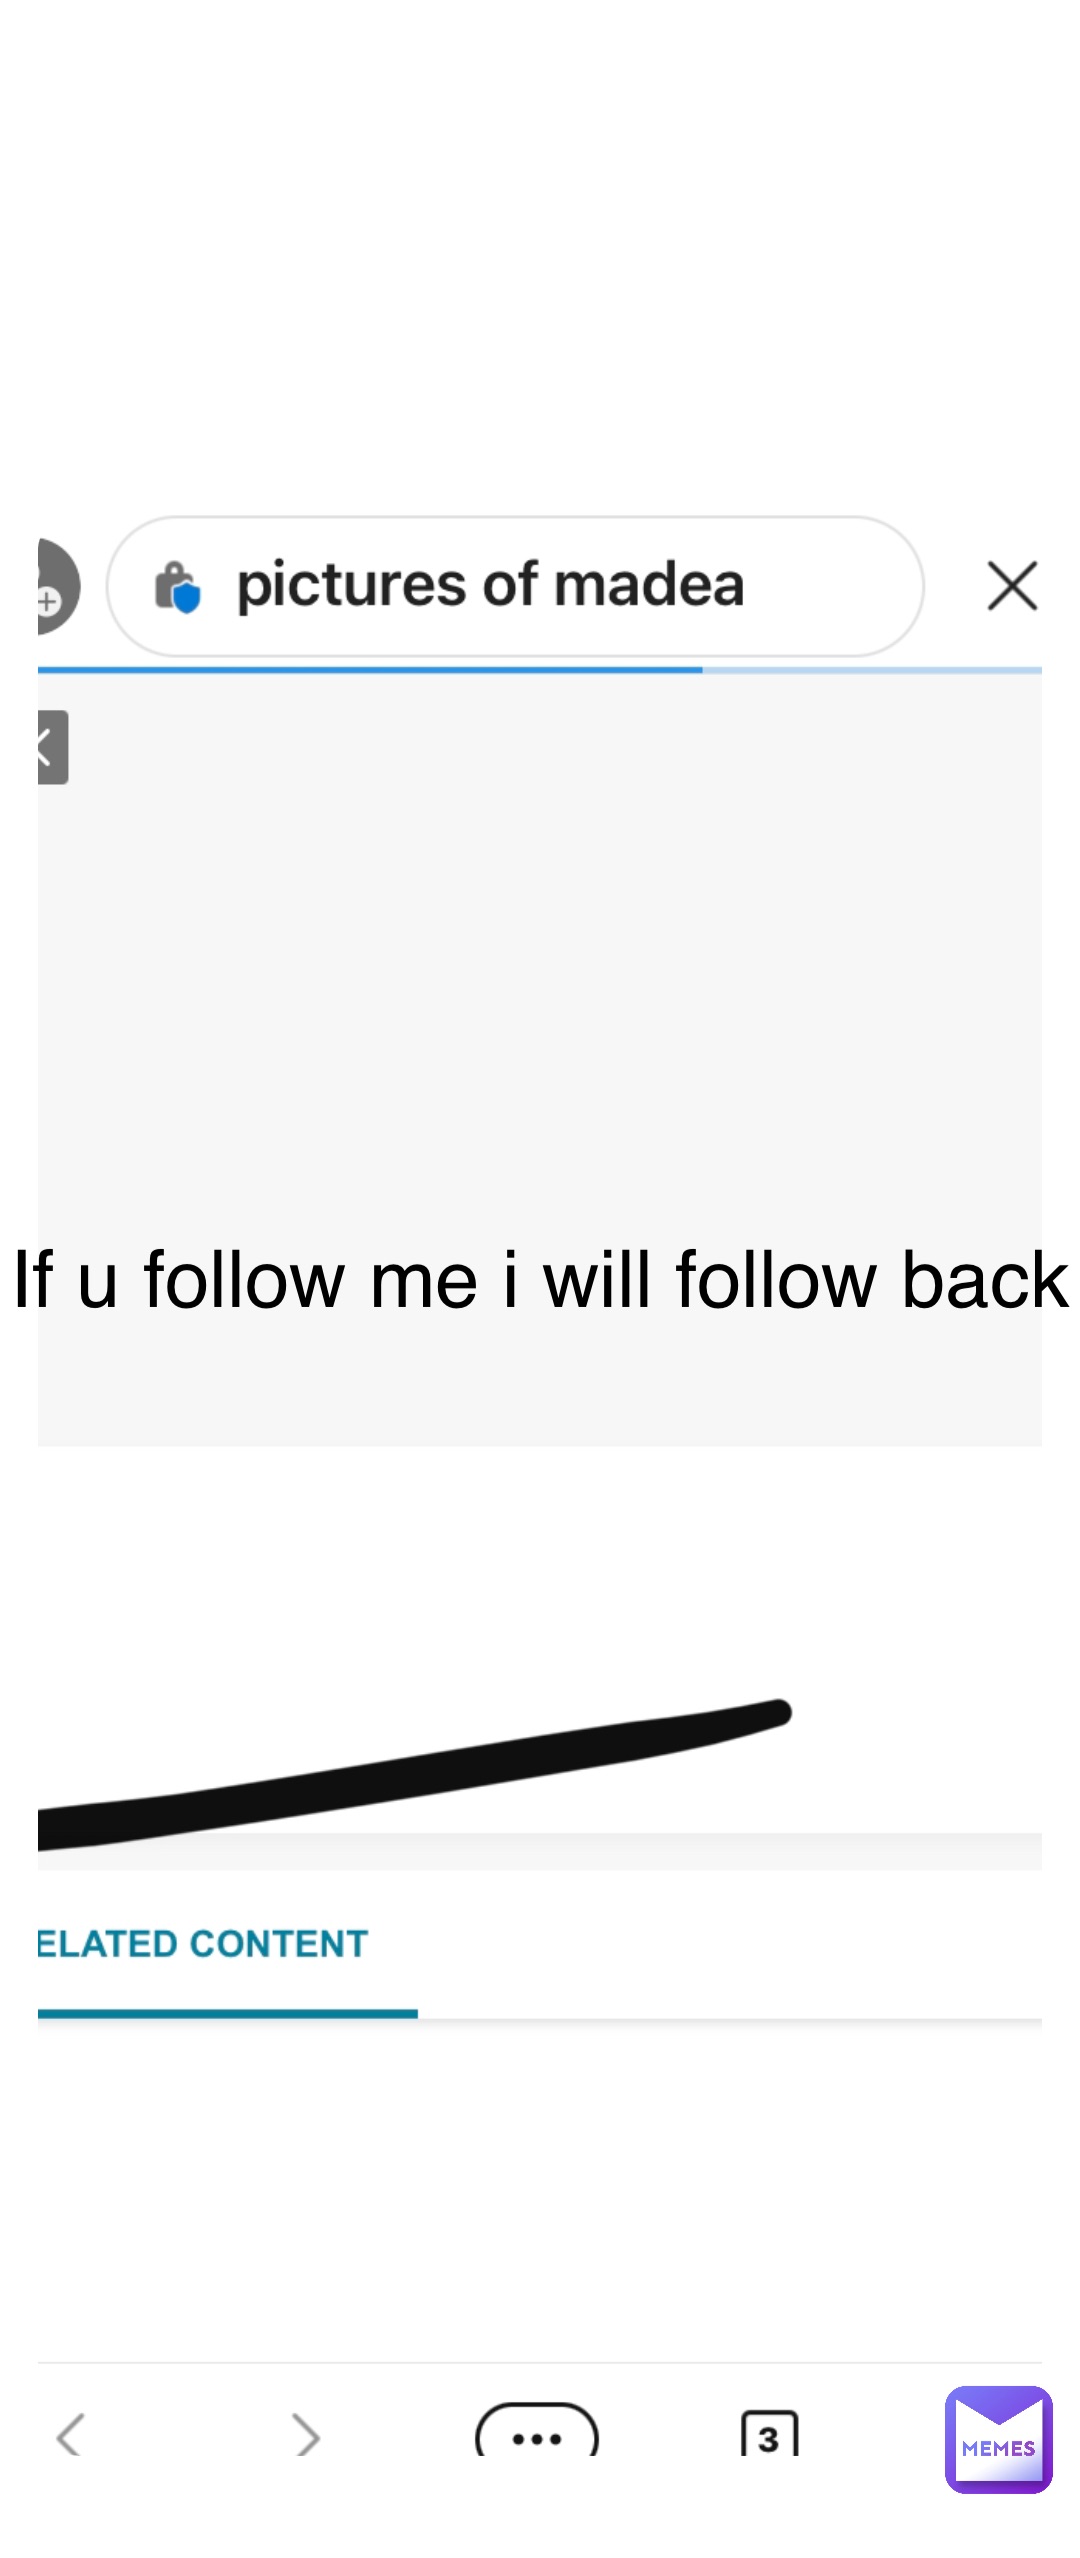 If u follow me i will follow back